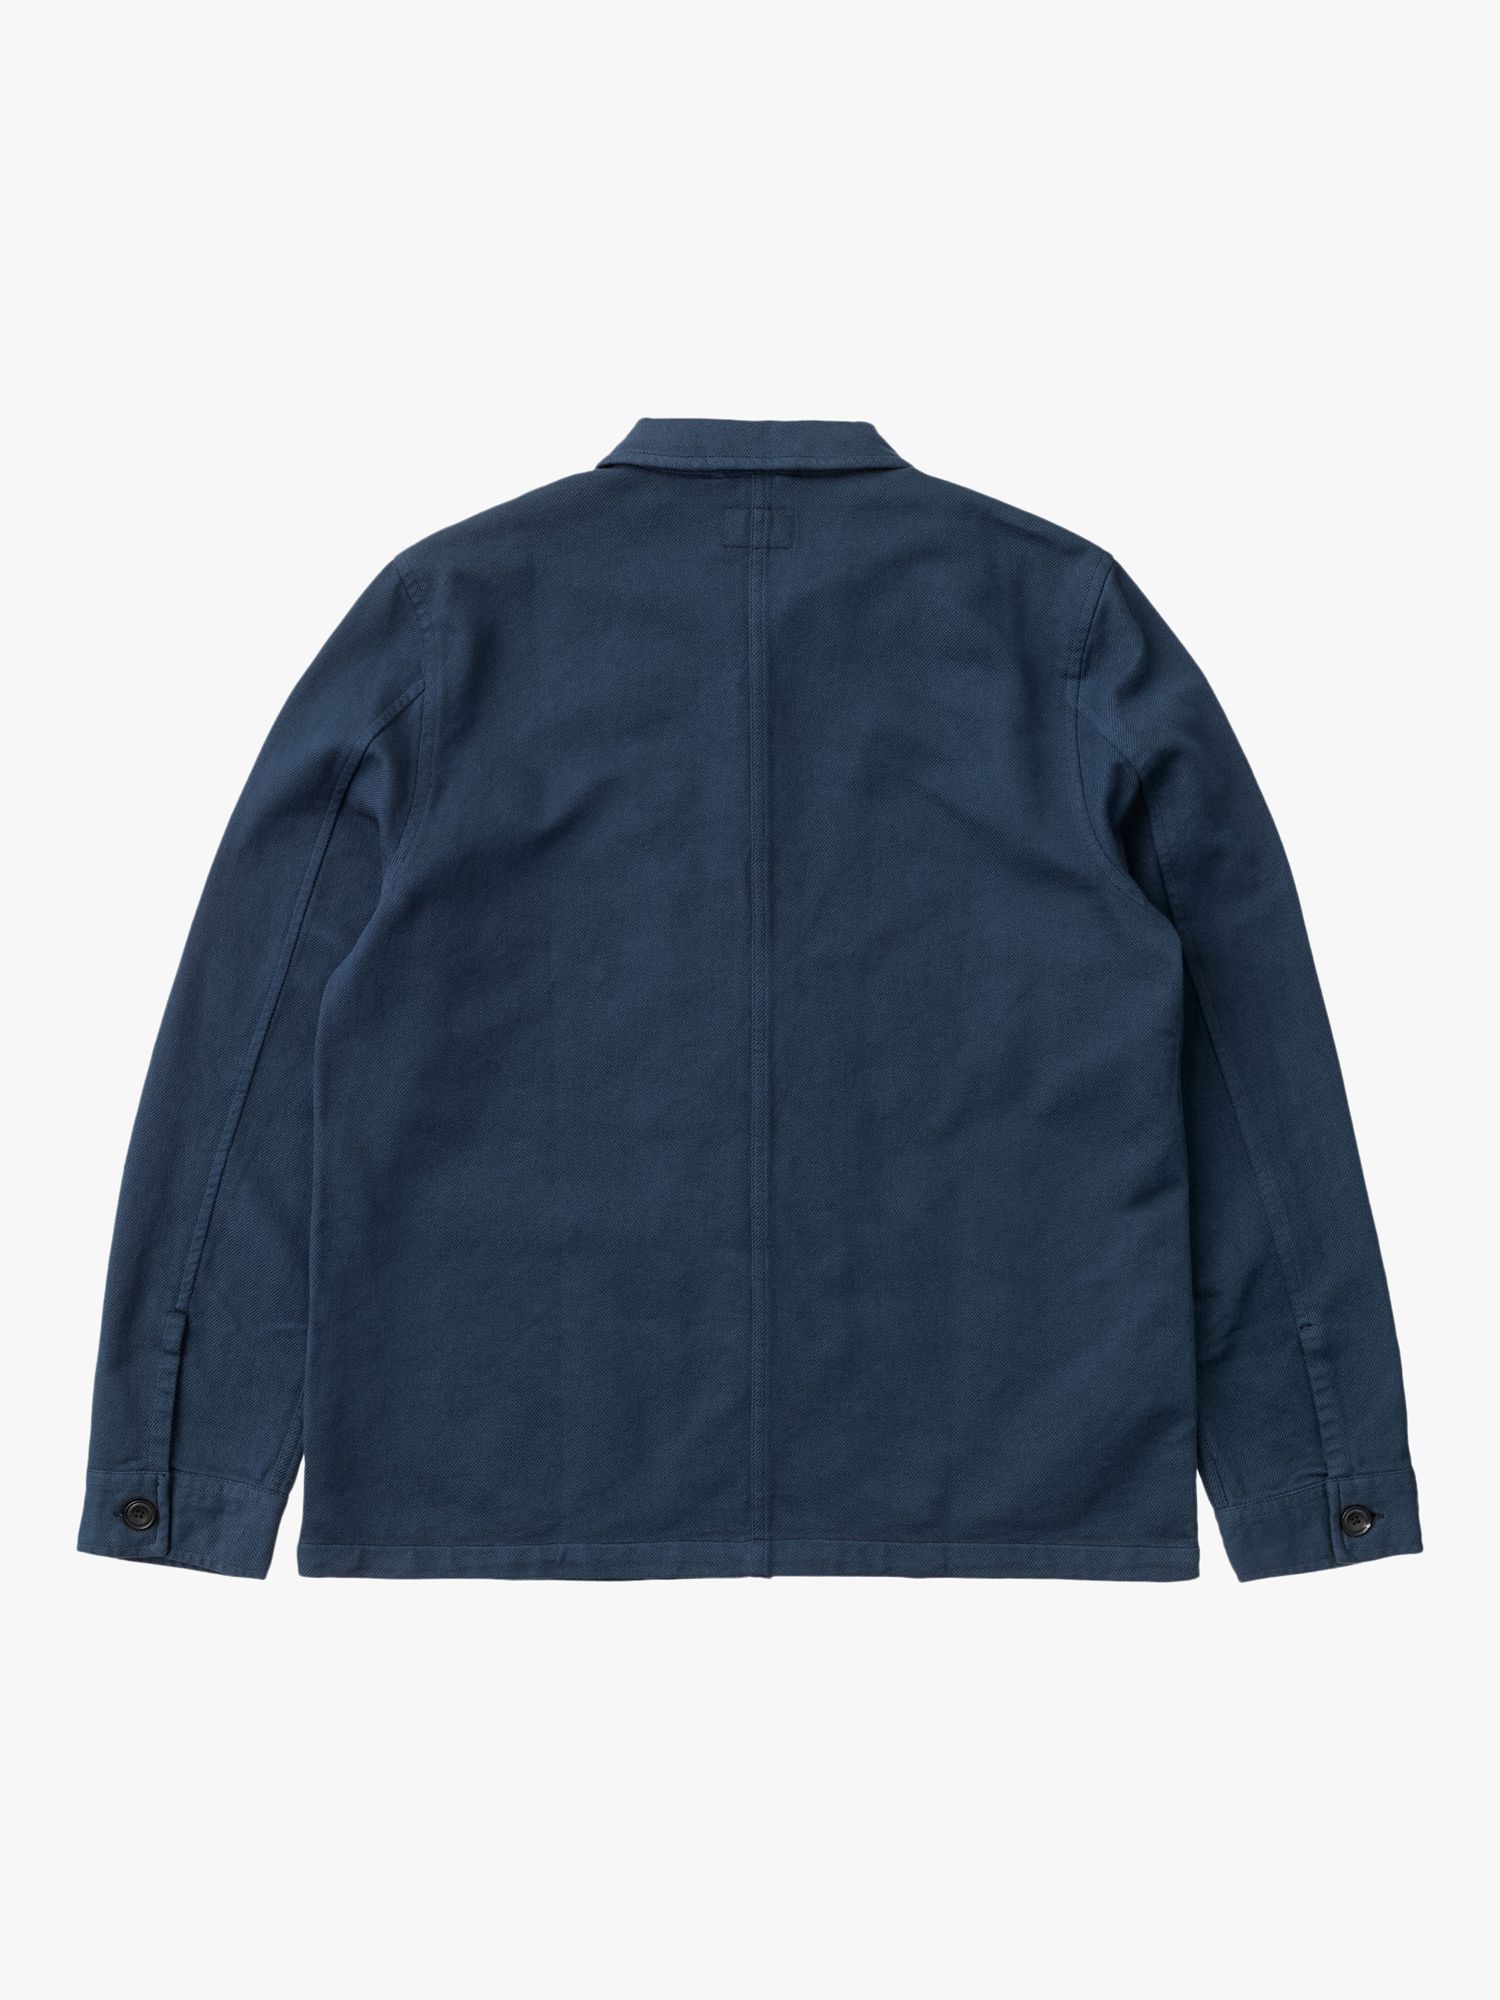 Nudie Jeans Barney Worker Jacket, Denim Blue, S